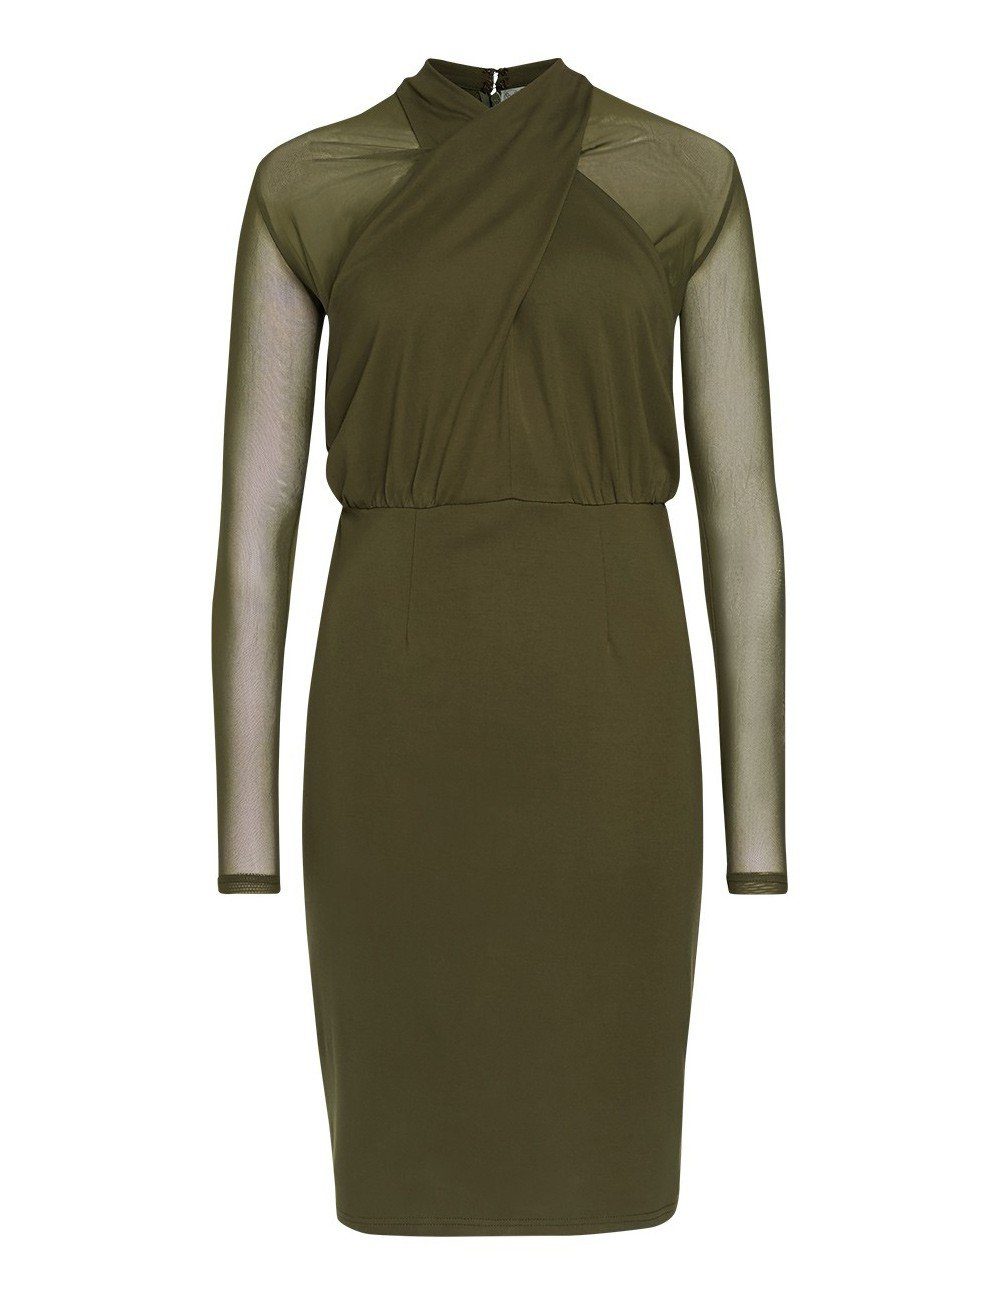 Brigitte von Boch Kleid olivgrün Sommerkleid Sainte-Croix